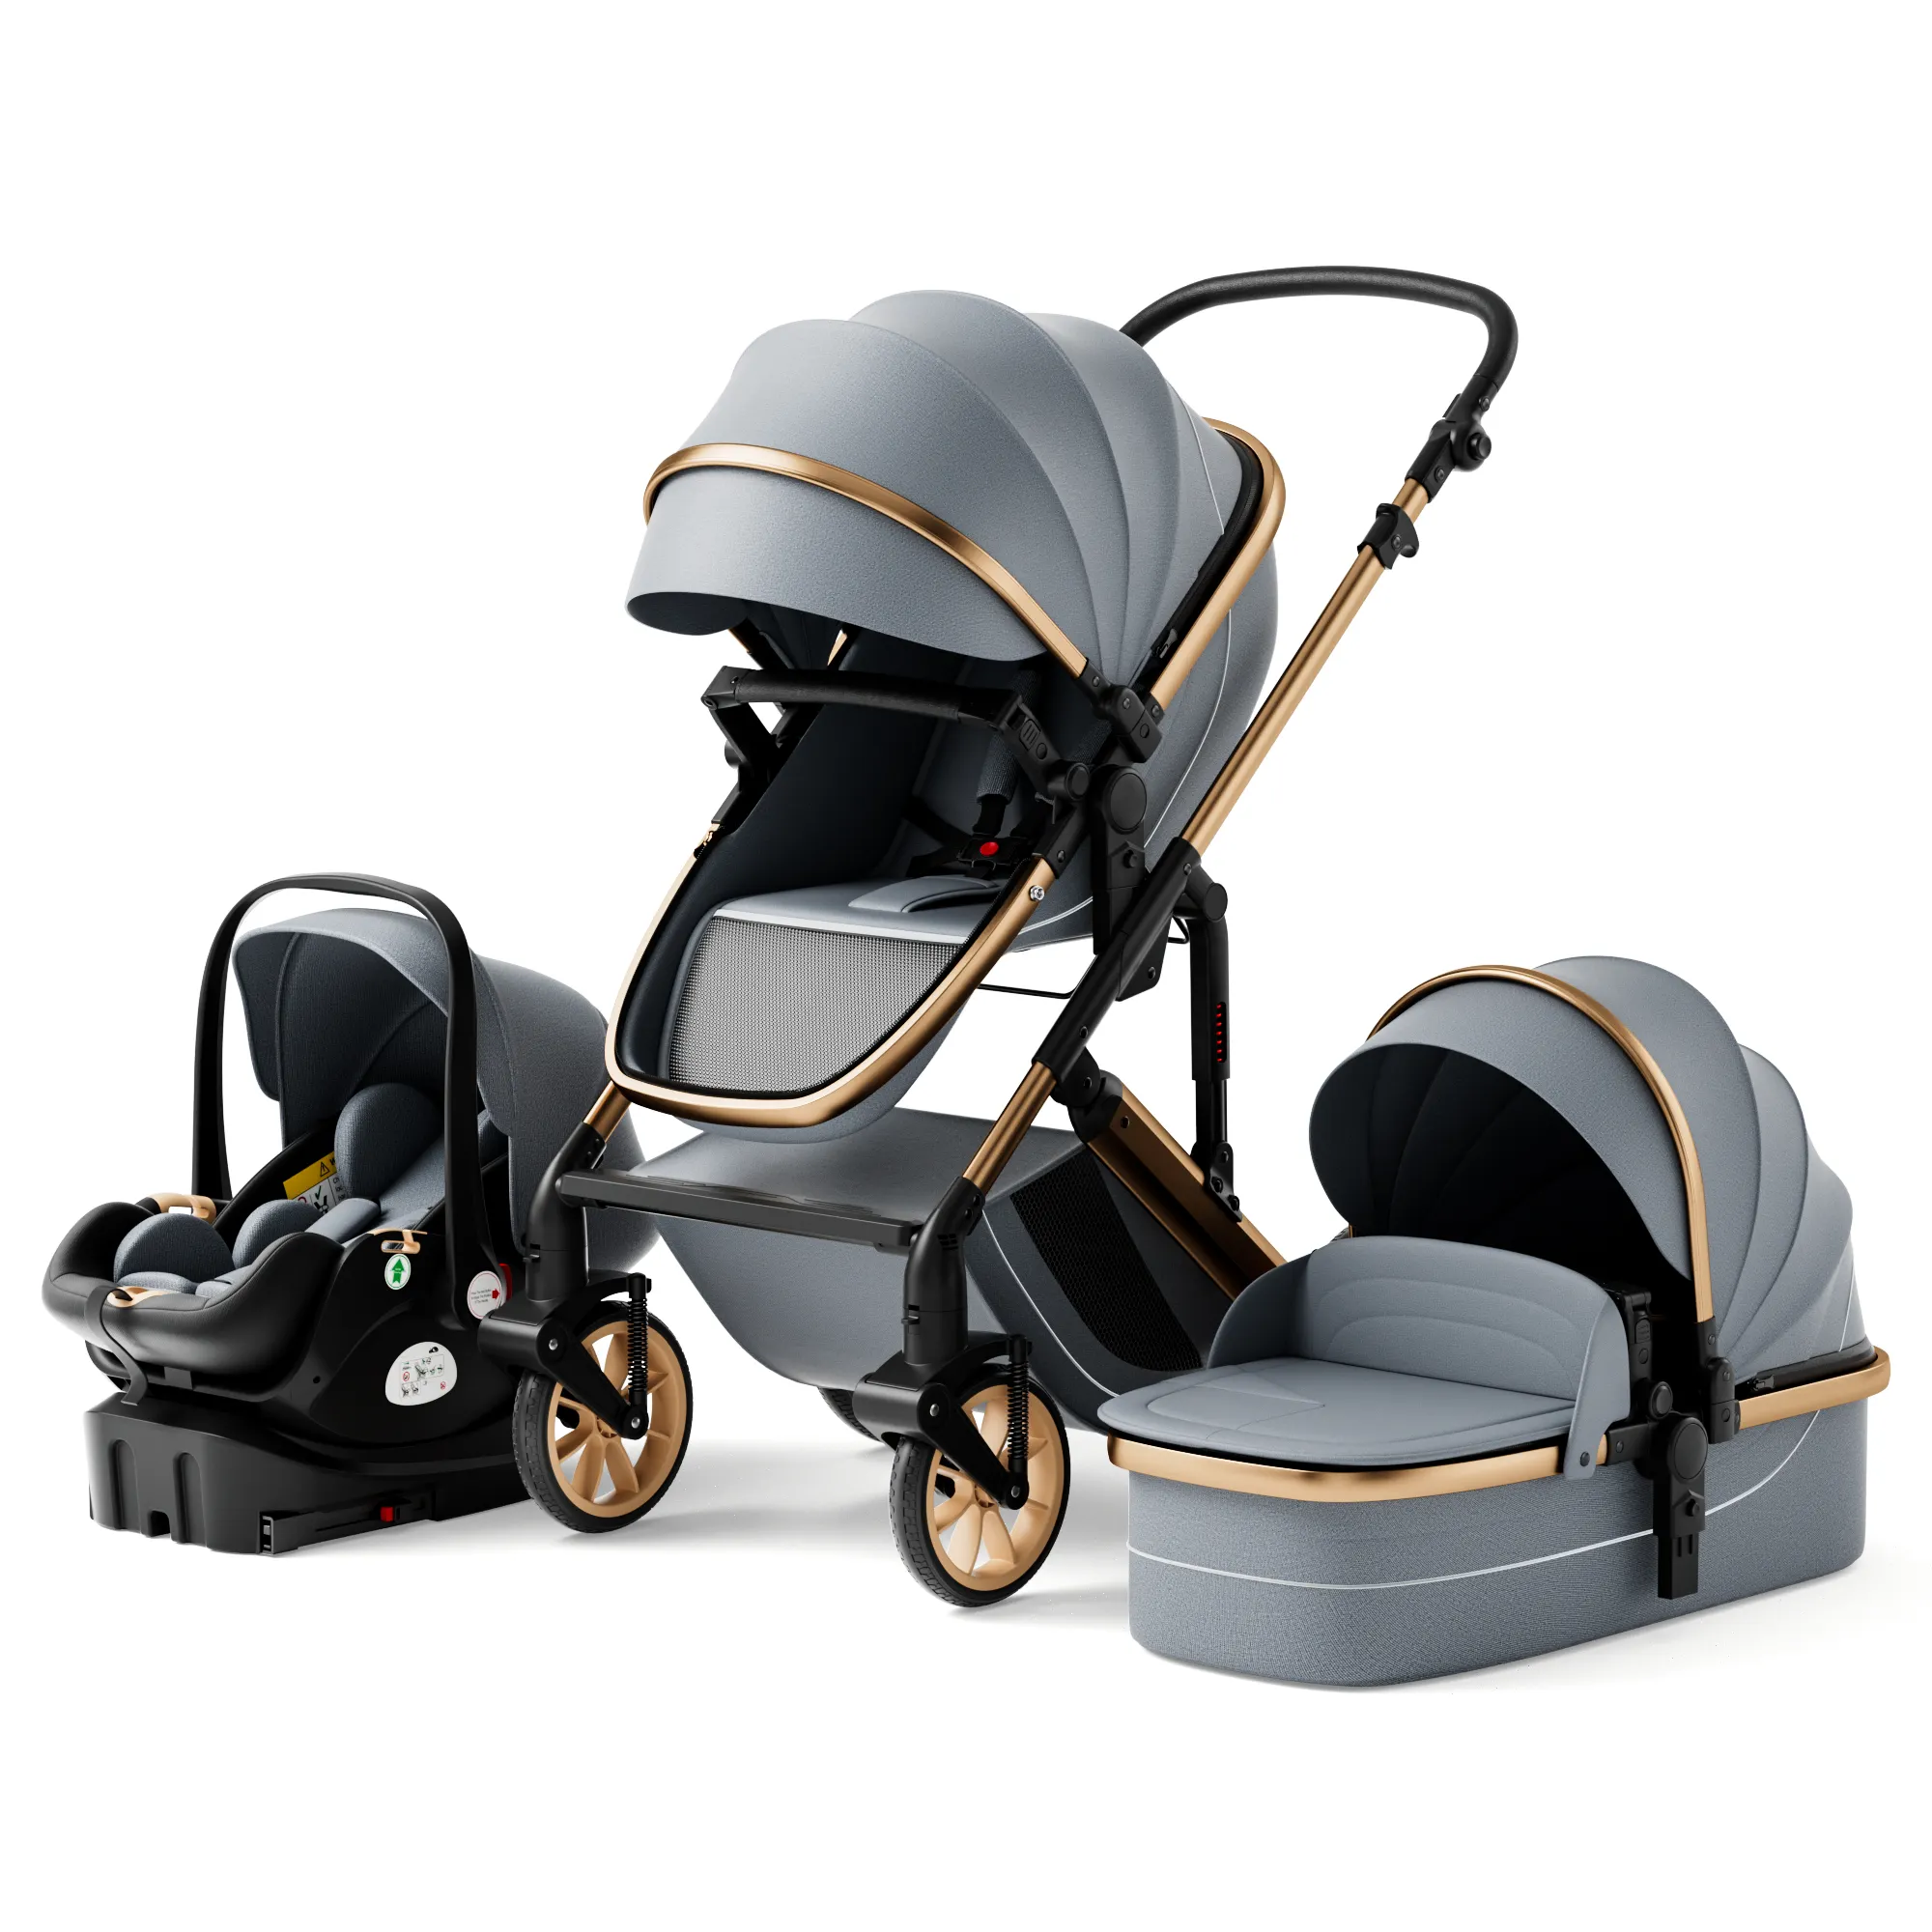 Luxus Kinderwagen High Landview 3 in 1 Kinderwagen Tragbarer Kinderwagen Europäisches Design Kinderwagen Kind Komfort für Neugeborene